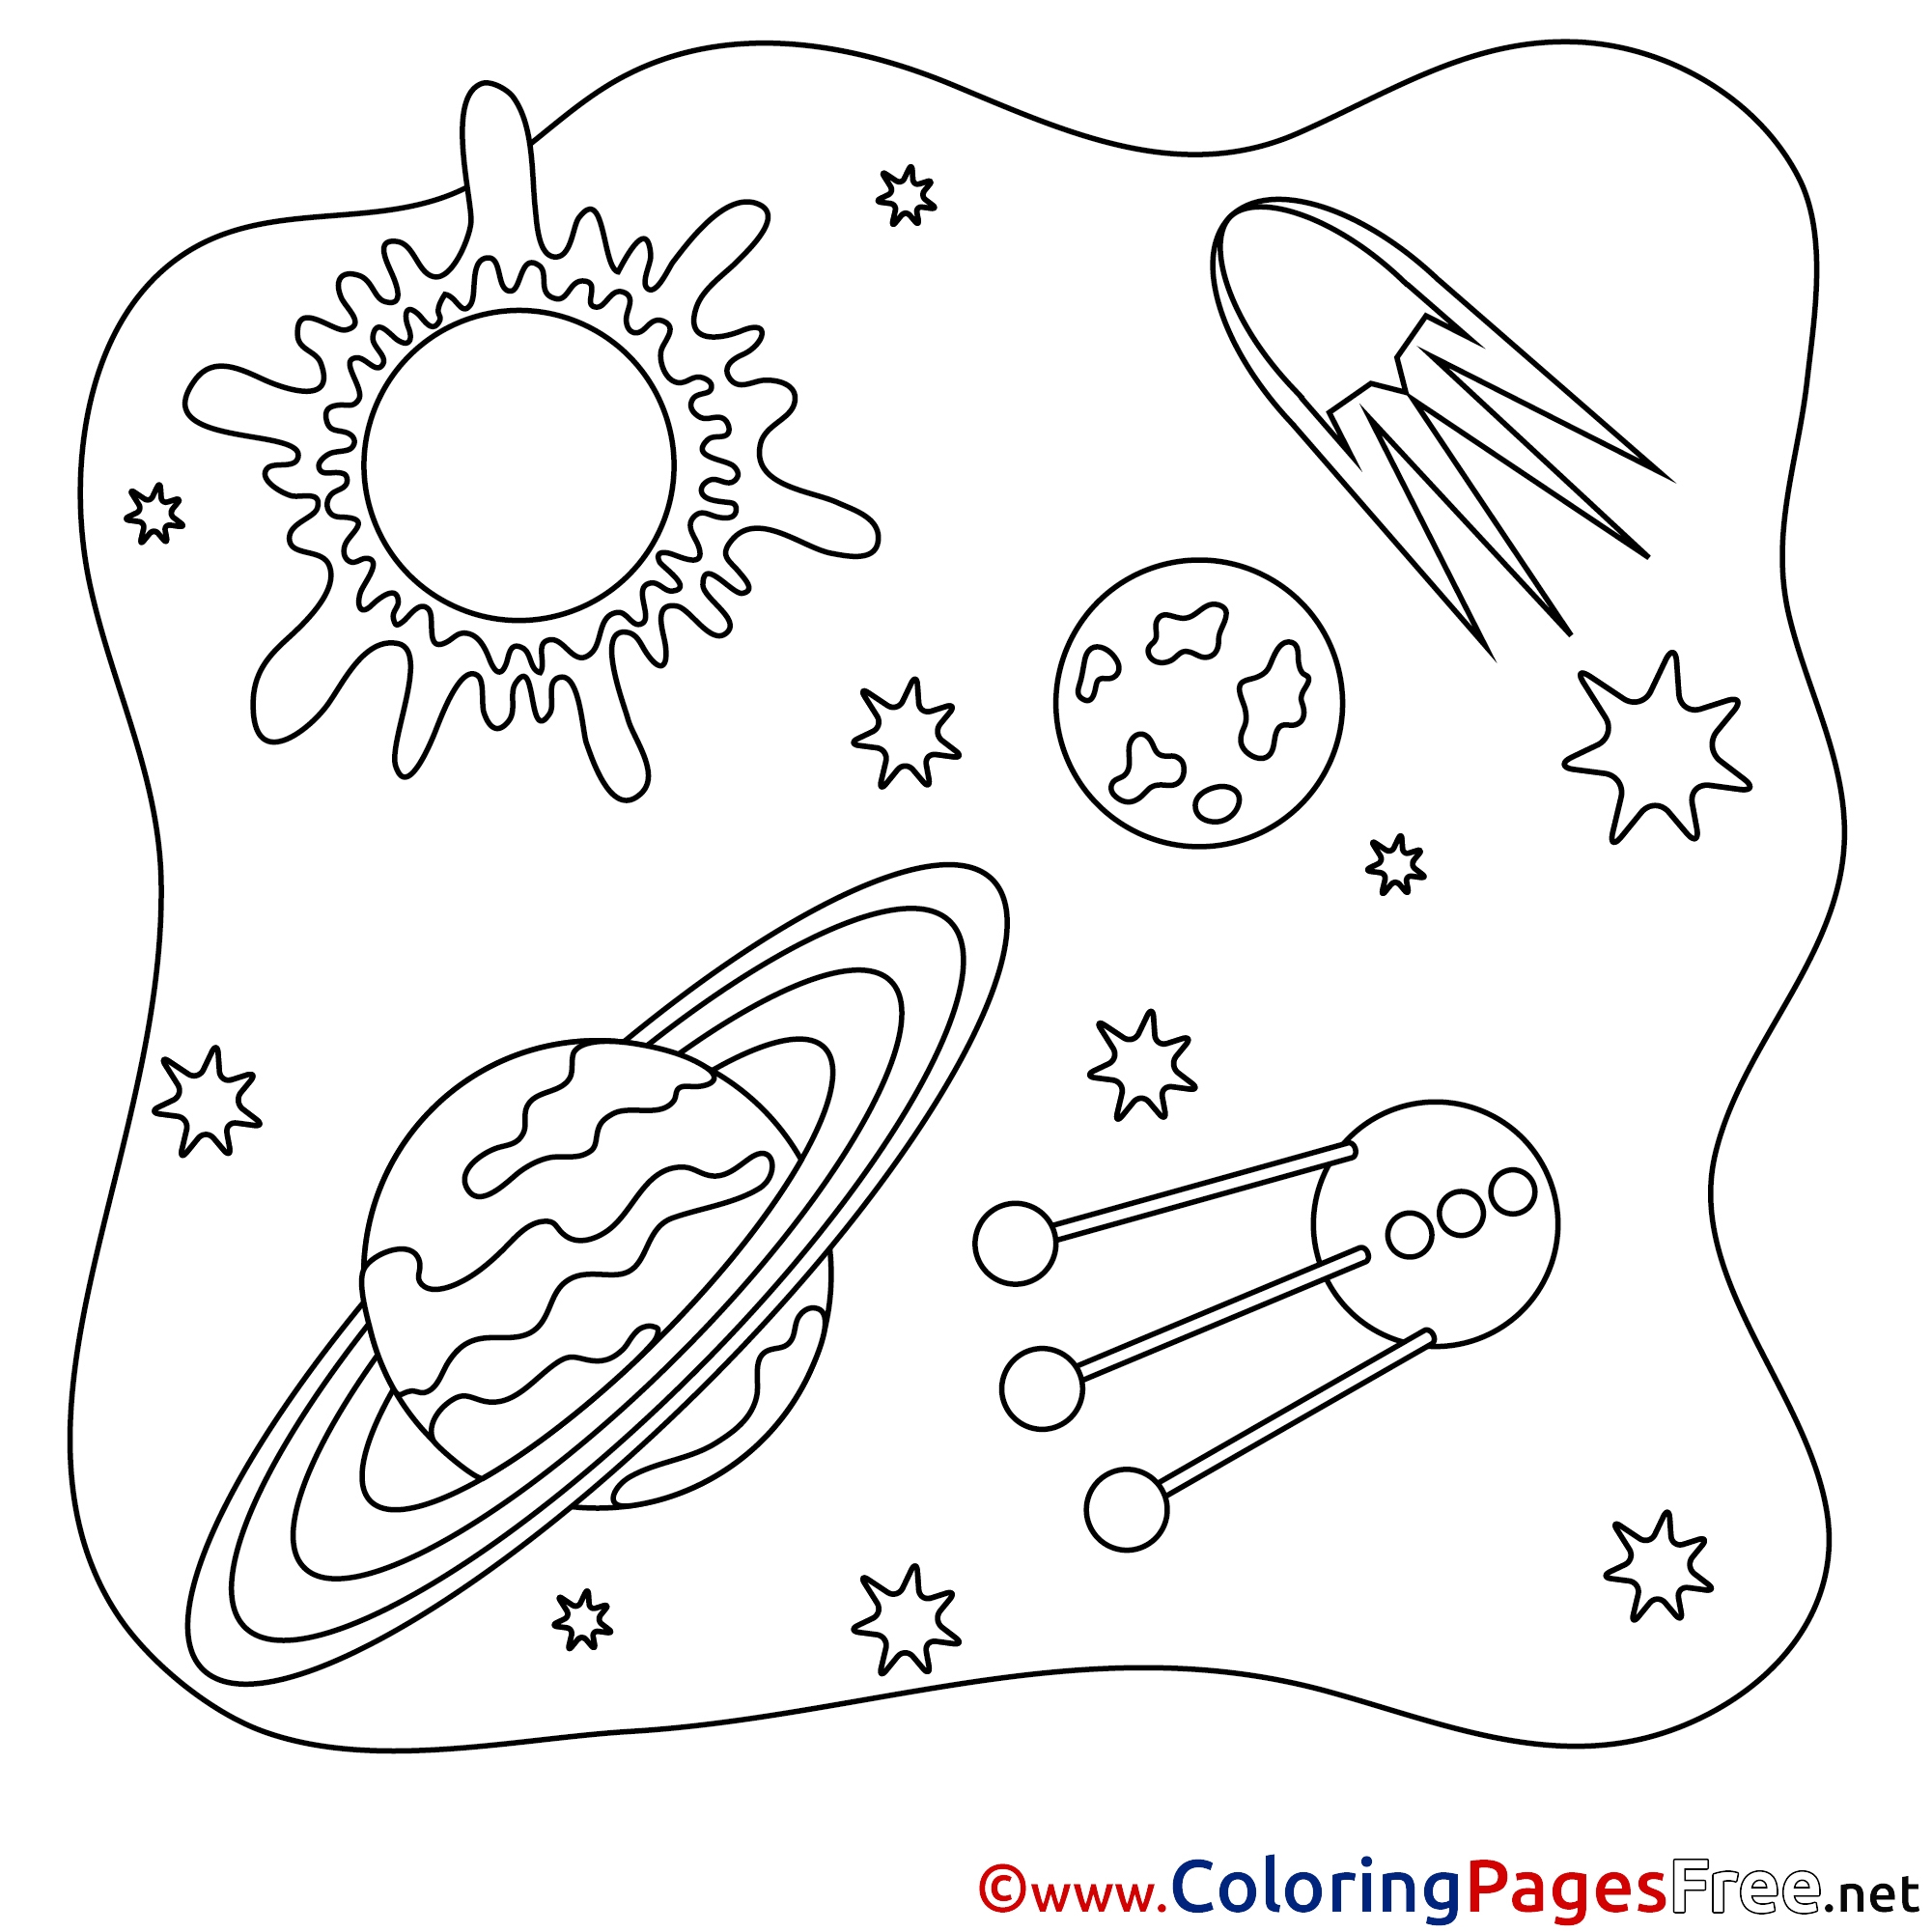 Раскраска космос для детей 4 5. Космос раскраска для детей. Раскраска космос и планеты. Раскраска космос и планеты для детей. Раскраски космос для дошкольников.